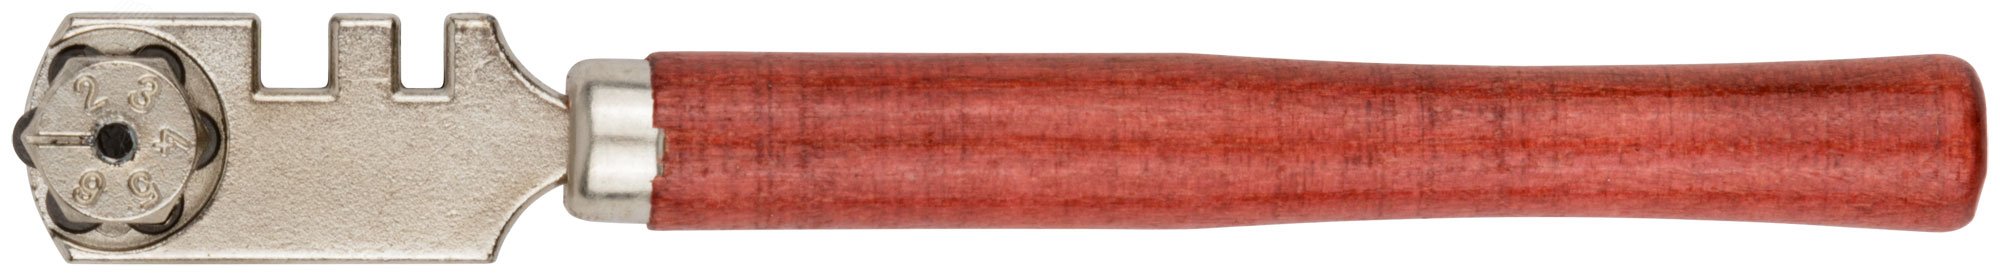 Стеклорез роликовый, 6 роликов, деревянная ручка 16917 FIT - превью